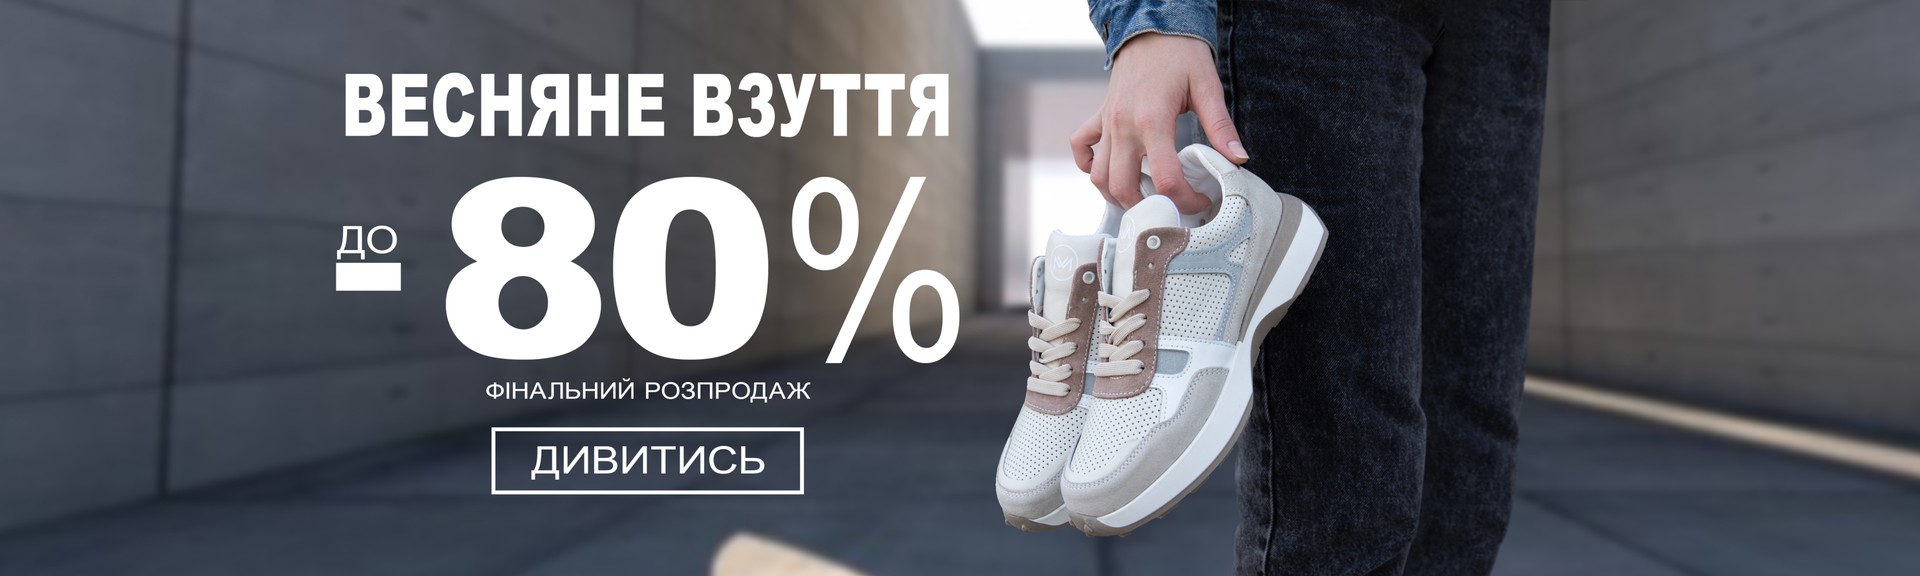 акція на весняне взуття -70%